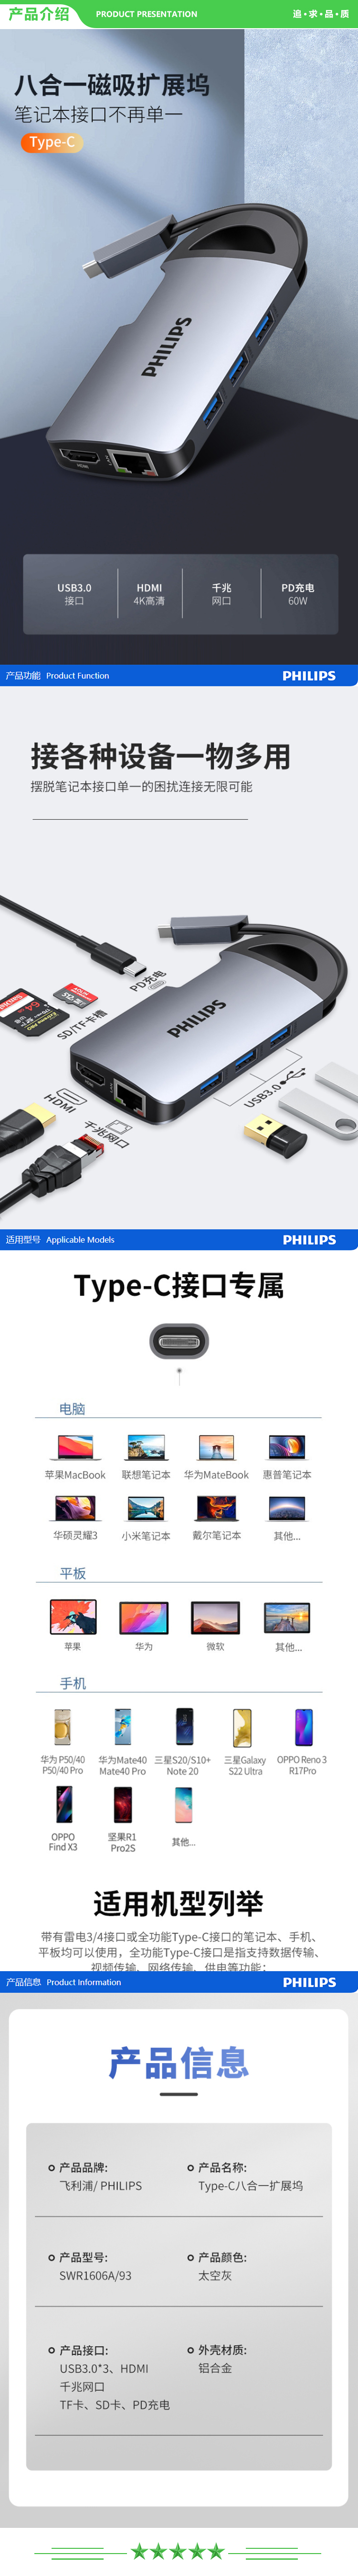 飞利浦 PHILIPS SWR1606A Type-C扩展坞 USB-C转HDMI 转换器 转接头 分线器带网口 .jpg